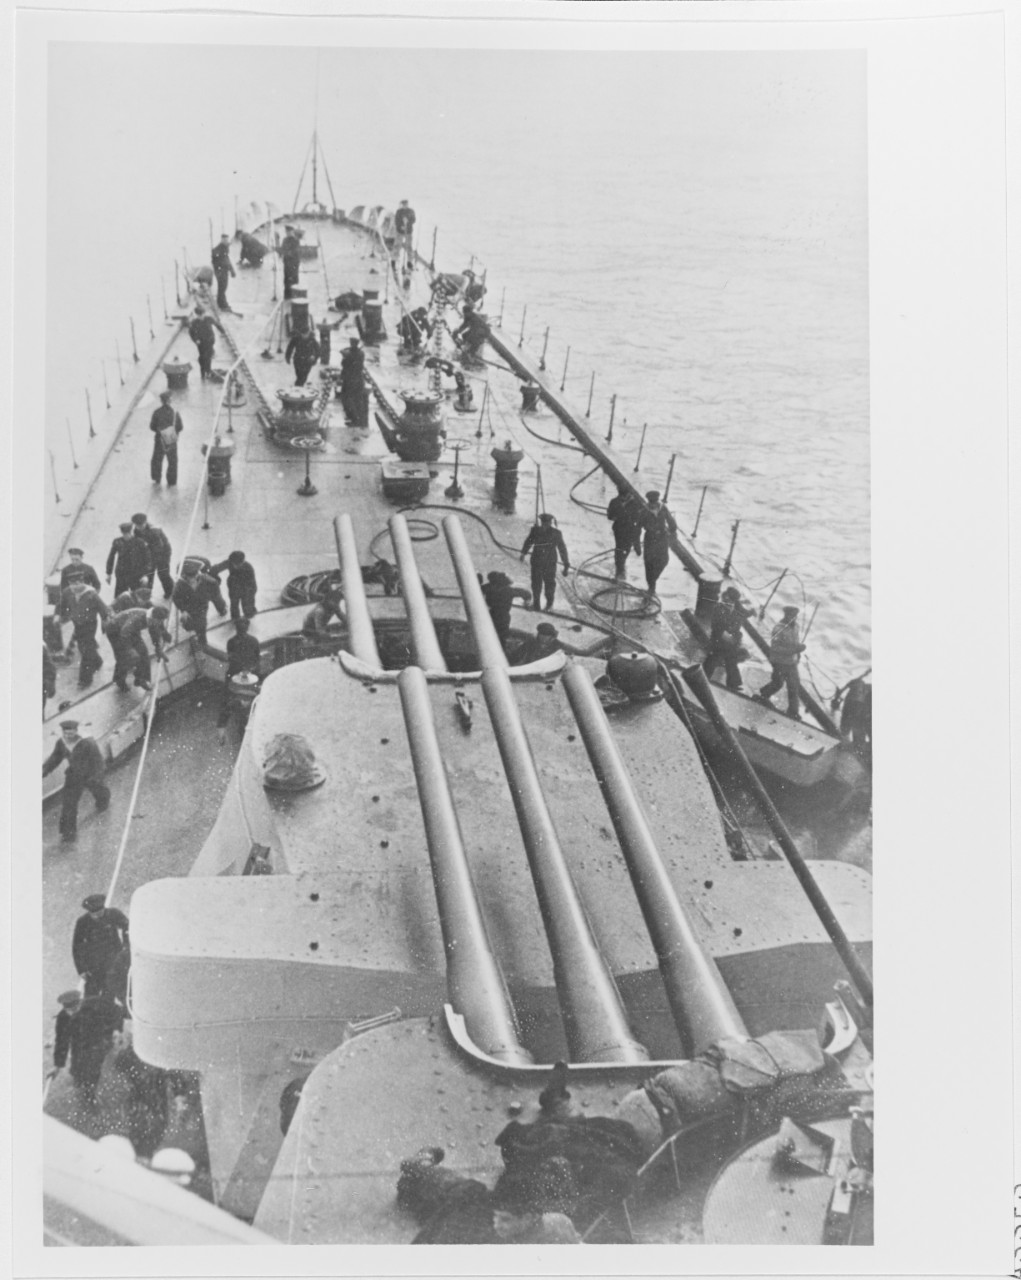 Bow deck view of a Soviet KIROV class heavy cruiser during World War II.